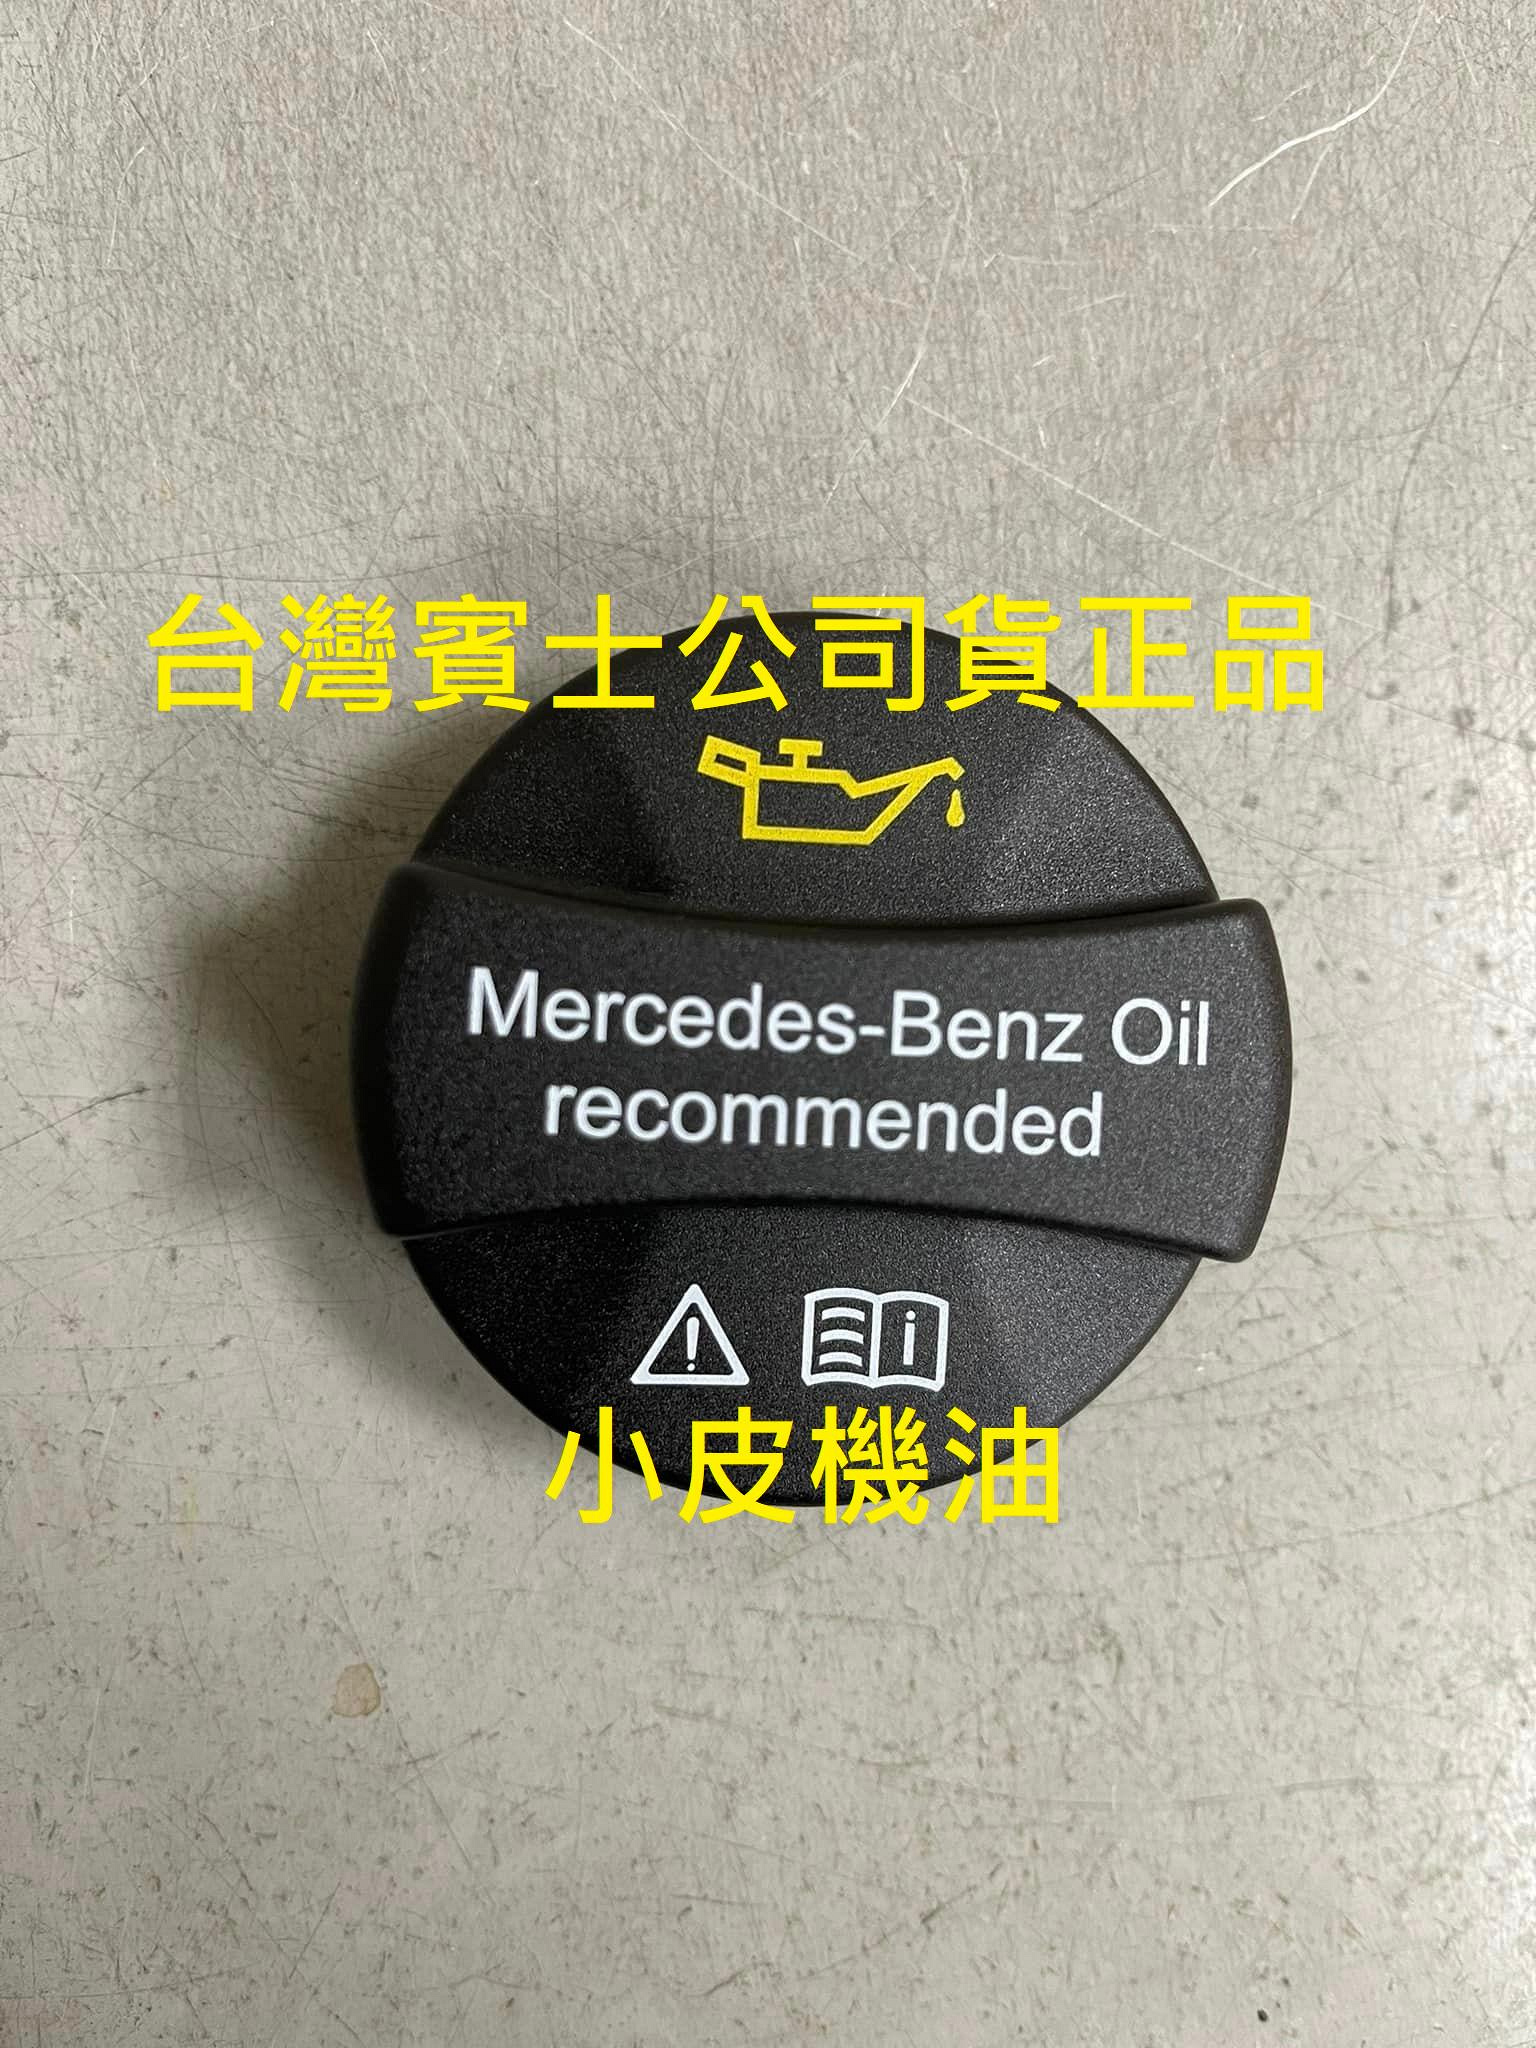 【小皮機油】Mercedes-Benz 賓士 原廠 公司貨 全新 機油蓋 機油加油蓋 賓士 OIL 加引擎機油的蓋子